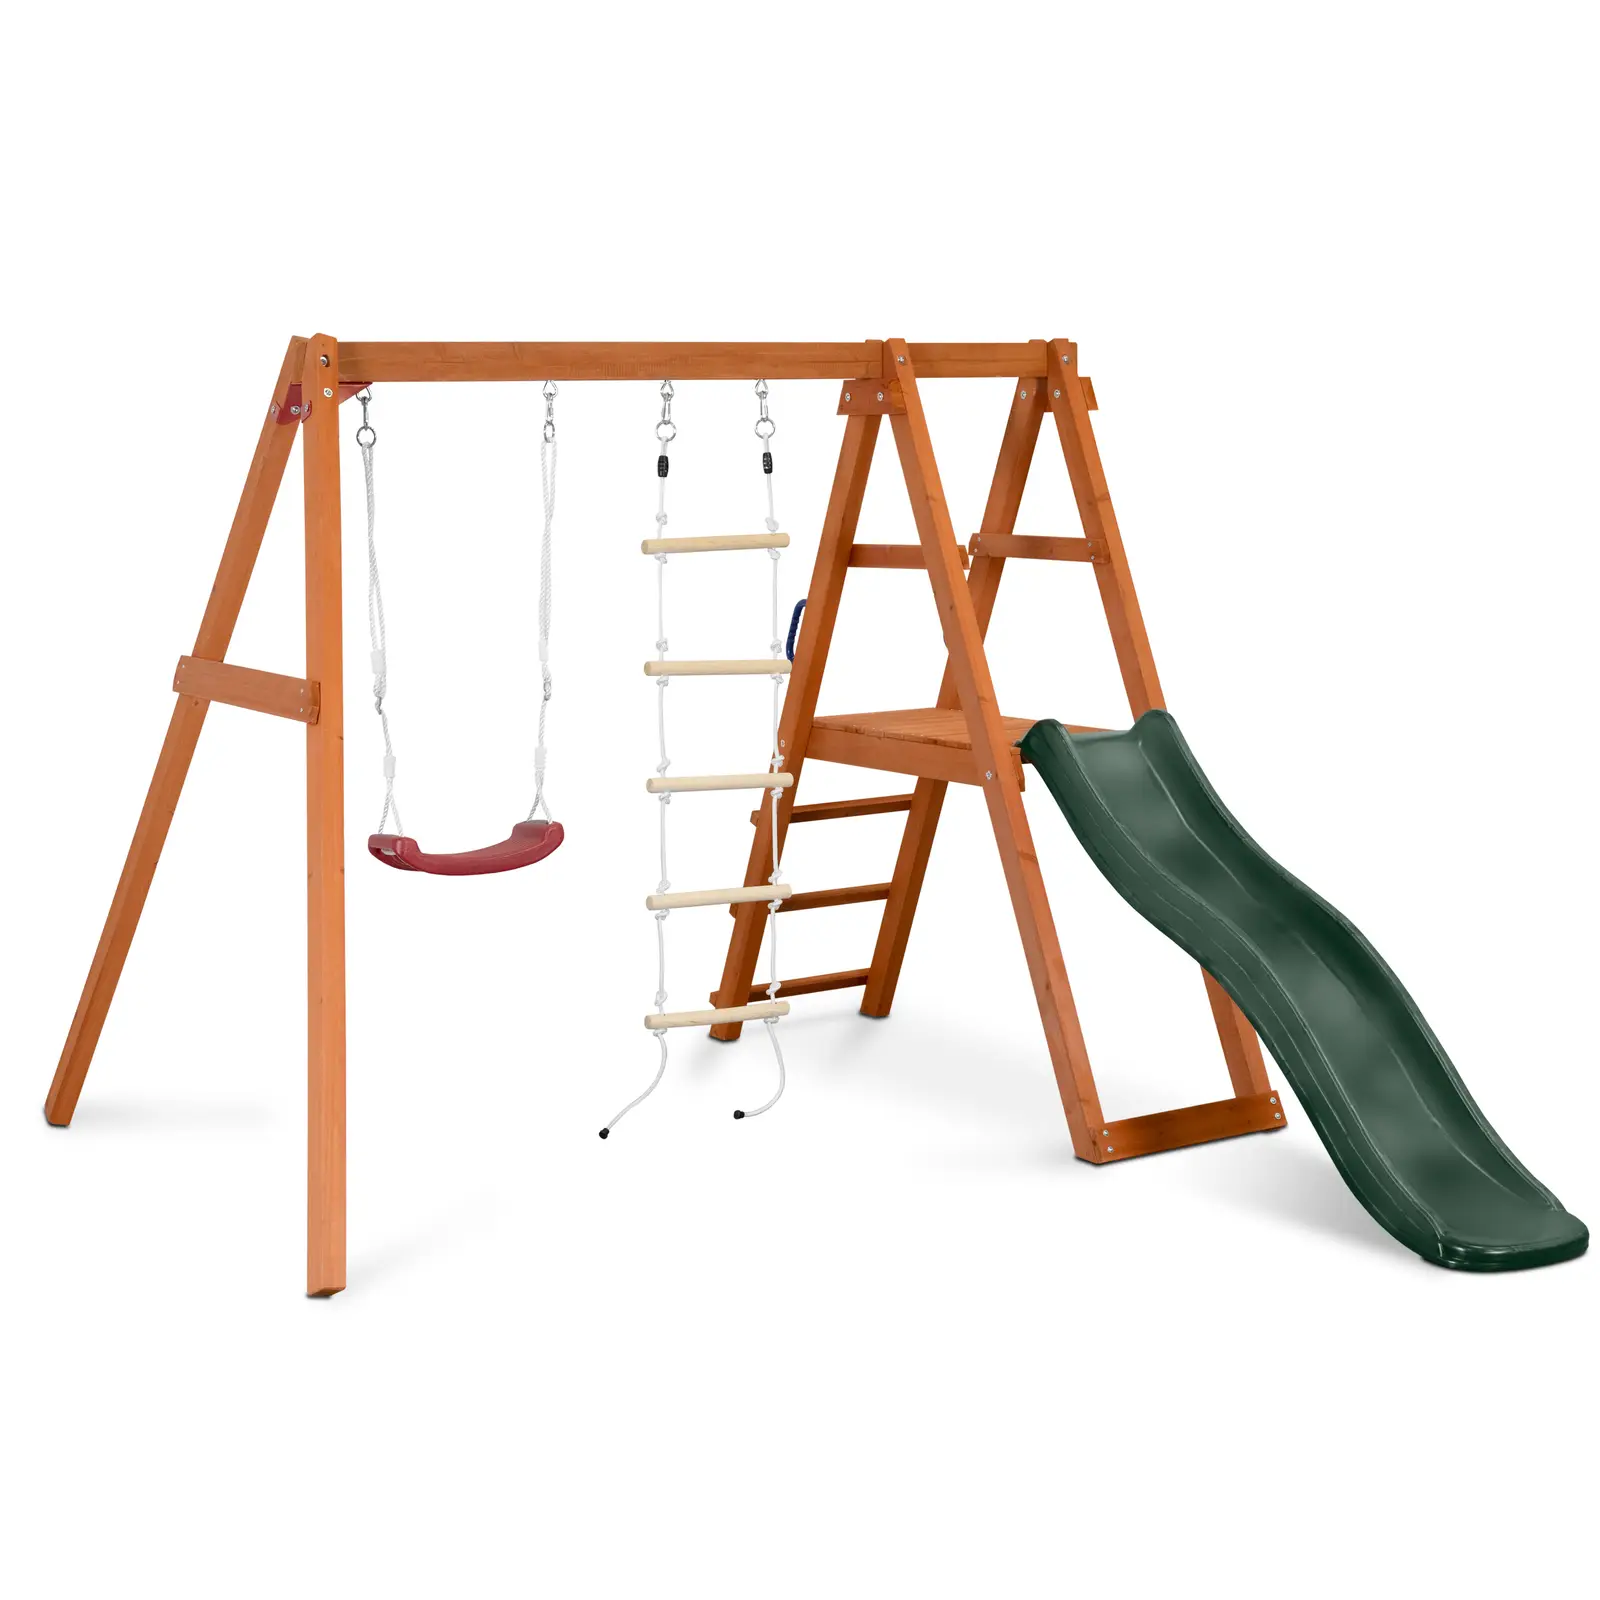 Parque infantil - baloiço - escada de corda - escorrega